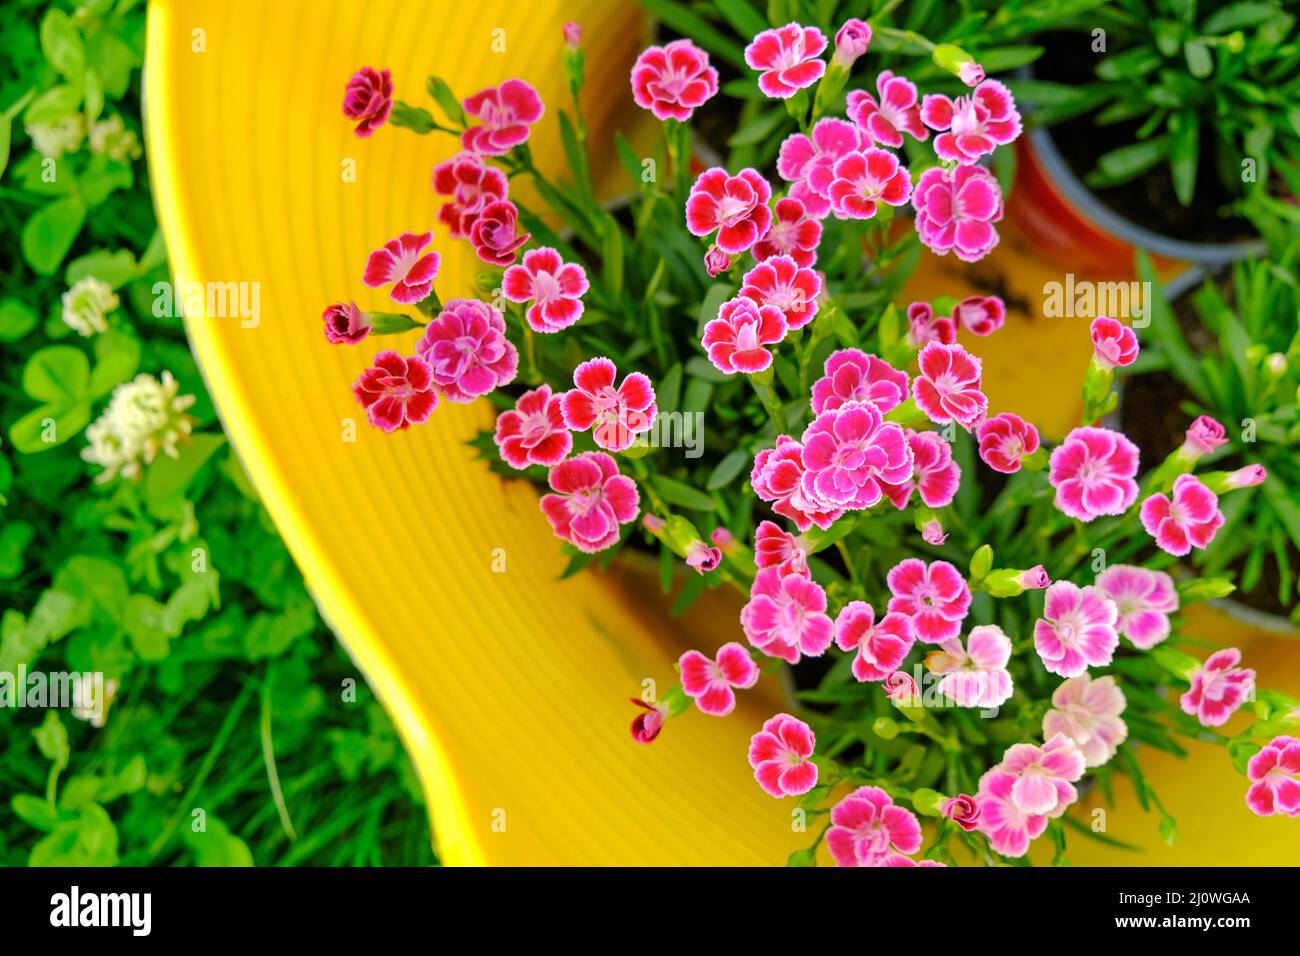 Geranium rosa blüht in einem gelben Korb in grünem Kleeblatt.Geranien wächst im Garten. Blumenzucht und Gartenarbeit.Frühling mehrjährige Blumen Stockfoto